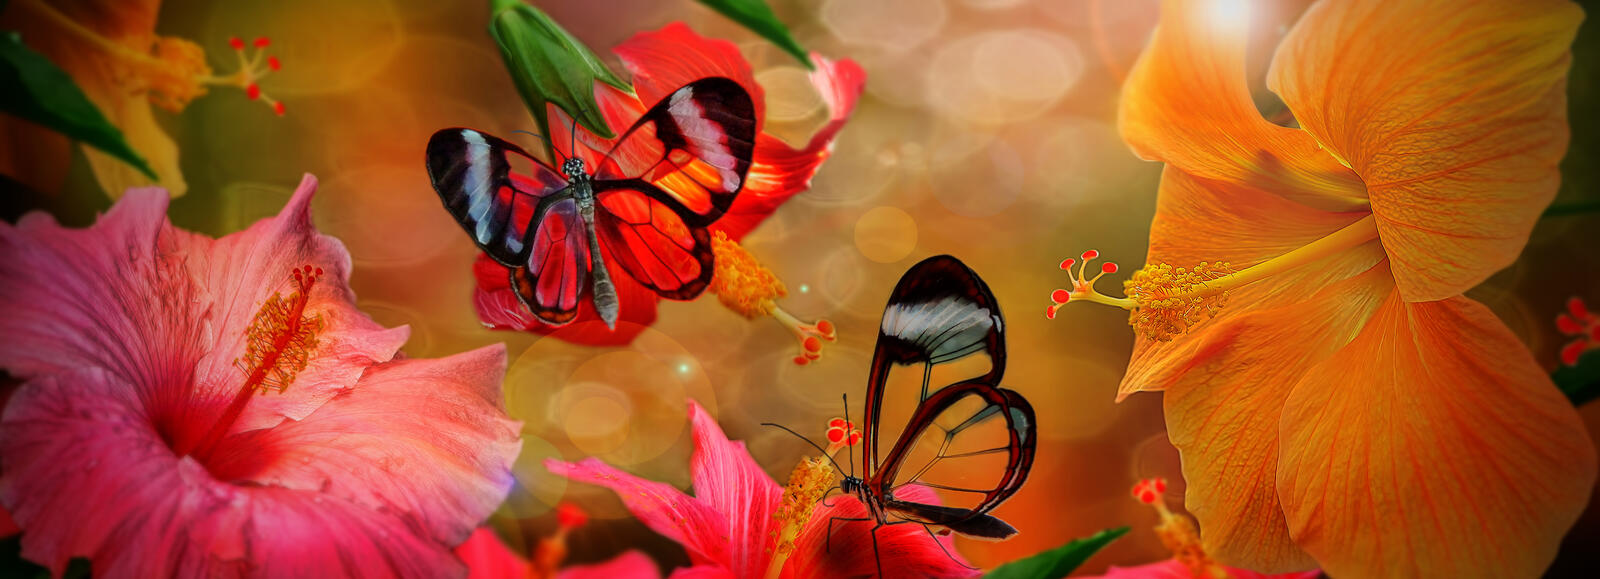 Обои гибискус бабочки цветочная композиция на рабочий стол